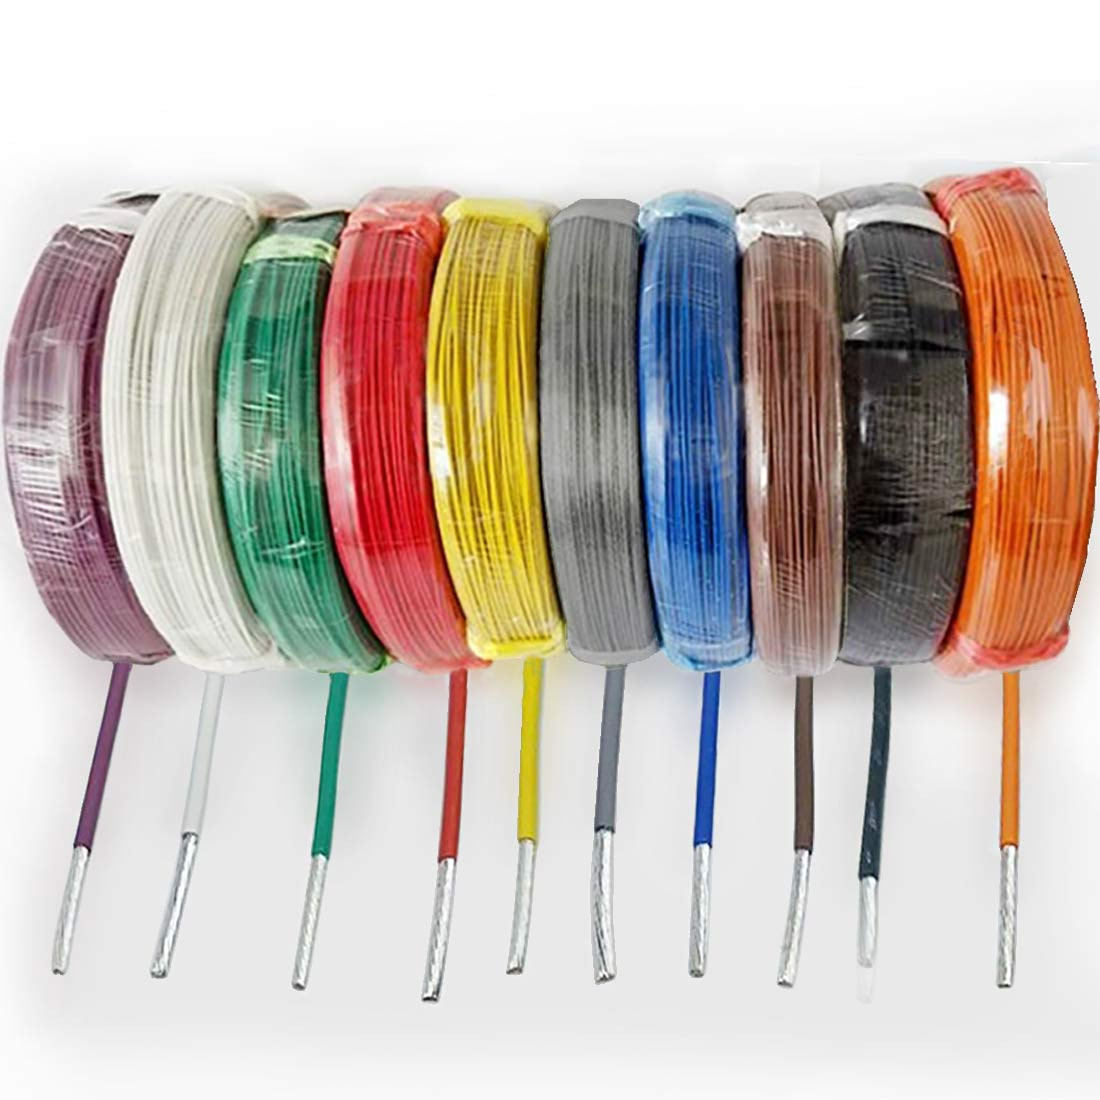 Câble électrique gaine téflon section conducteur 0.3mm² cho